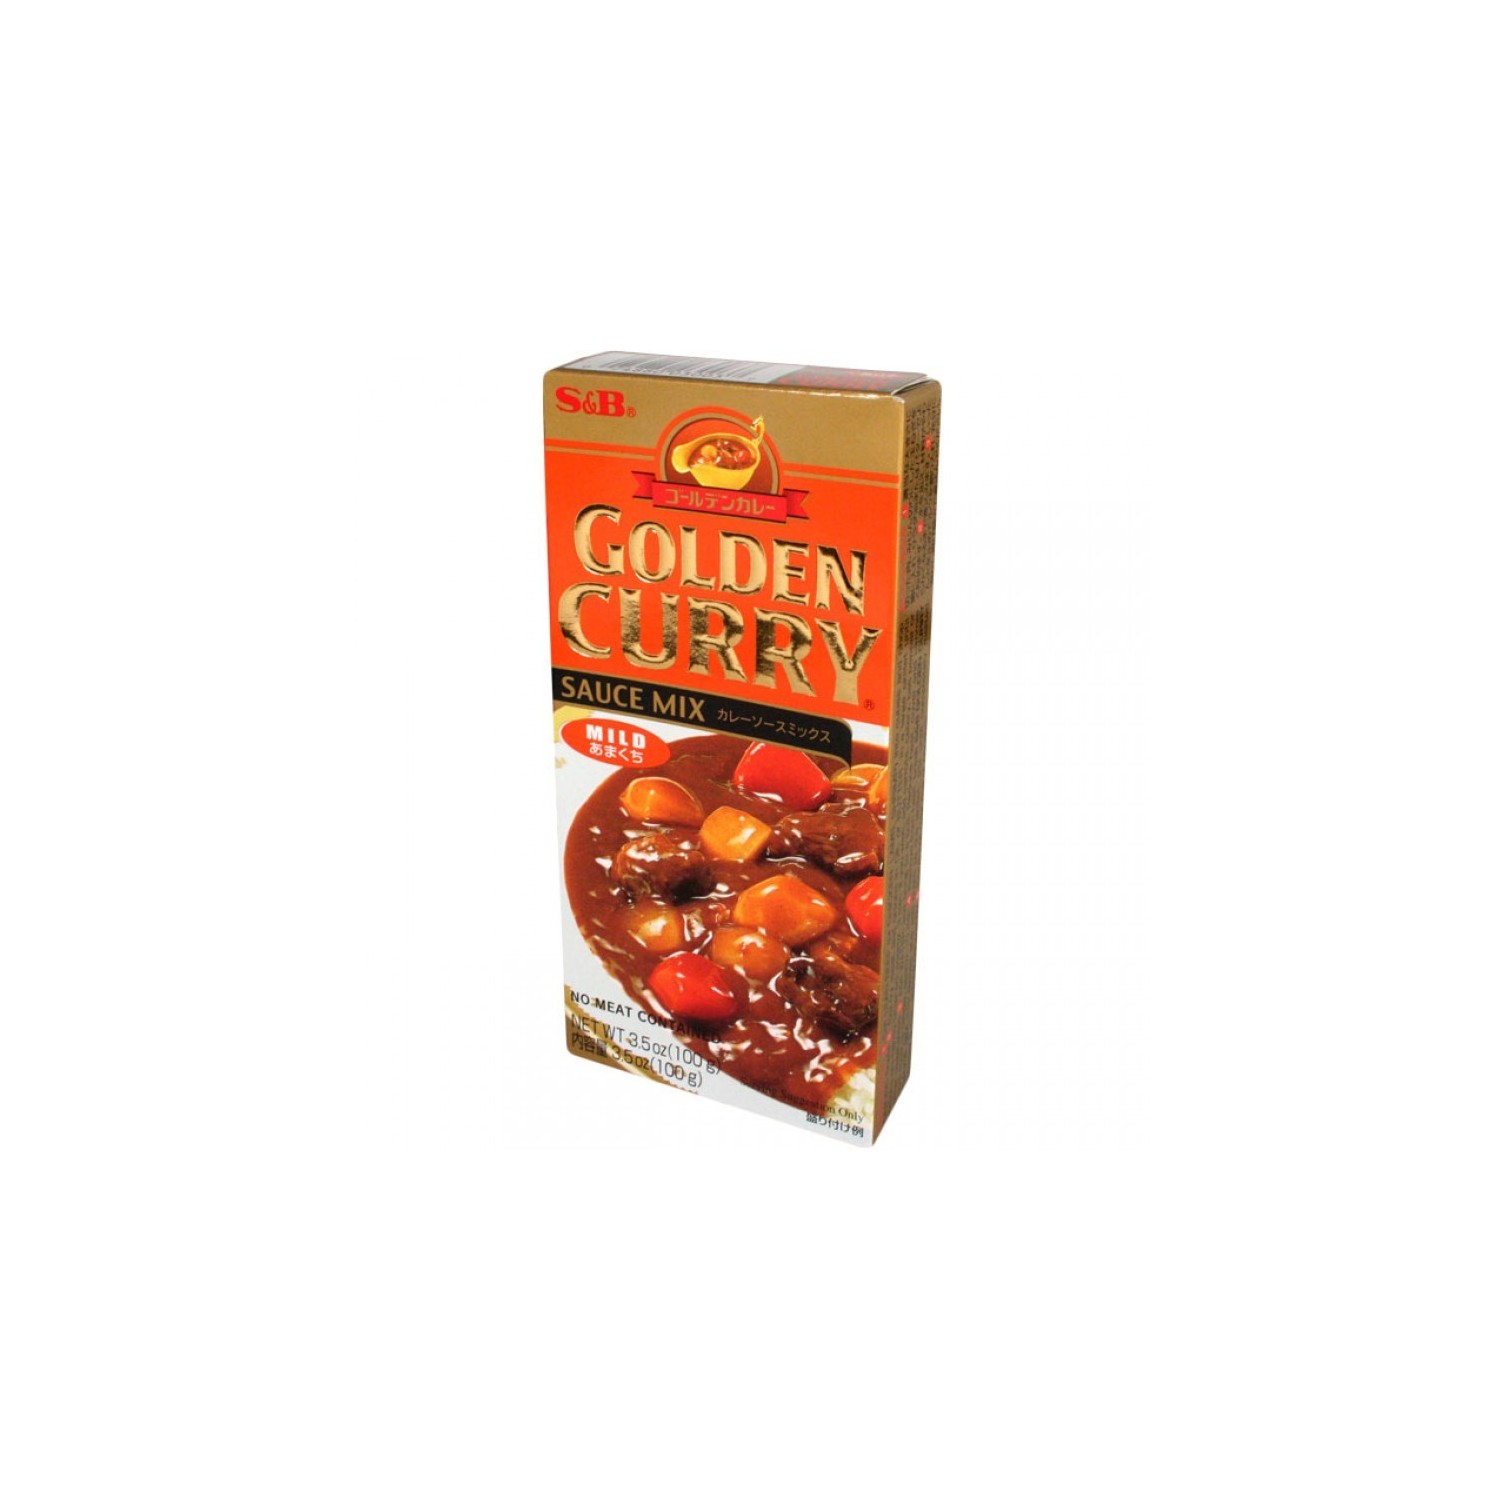 S&B - Golden  92g - Curry Sauce Mix